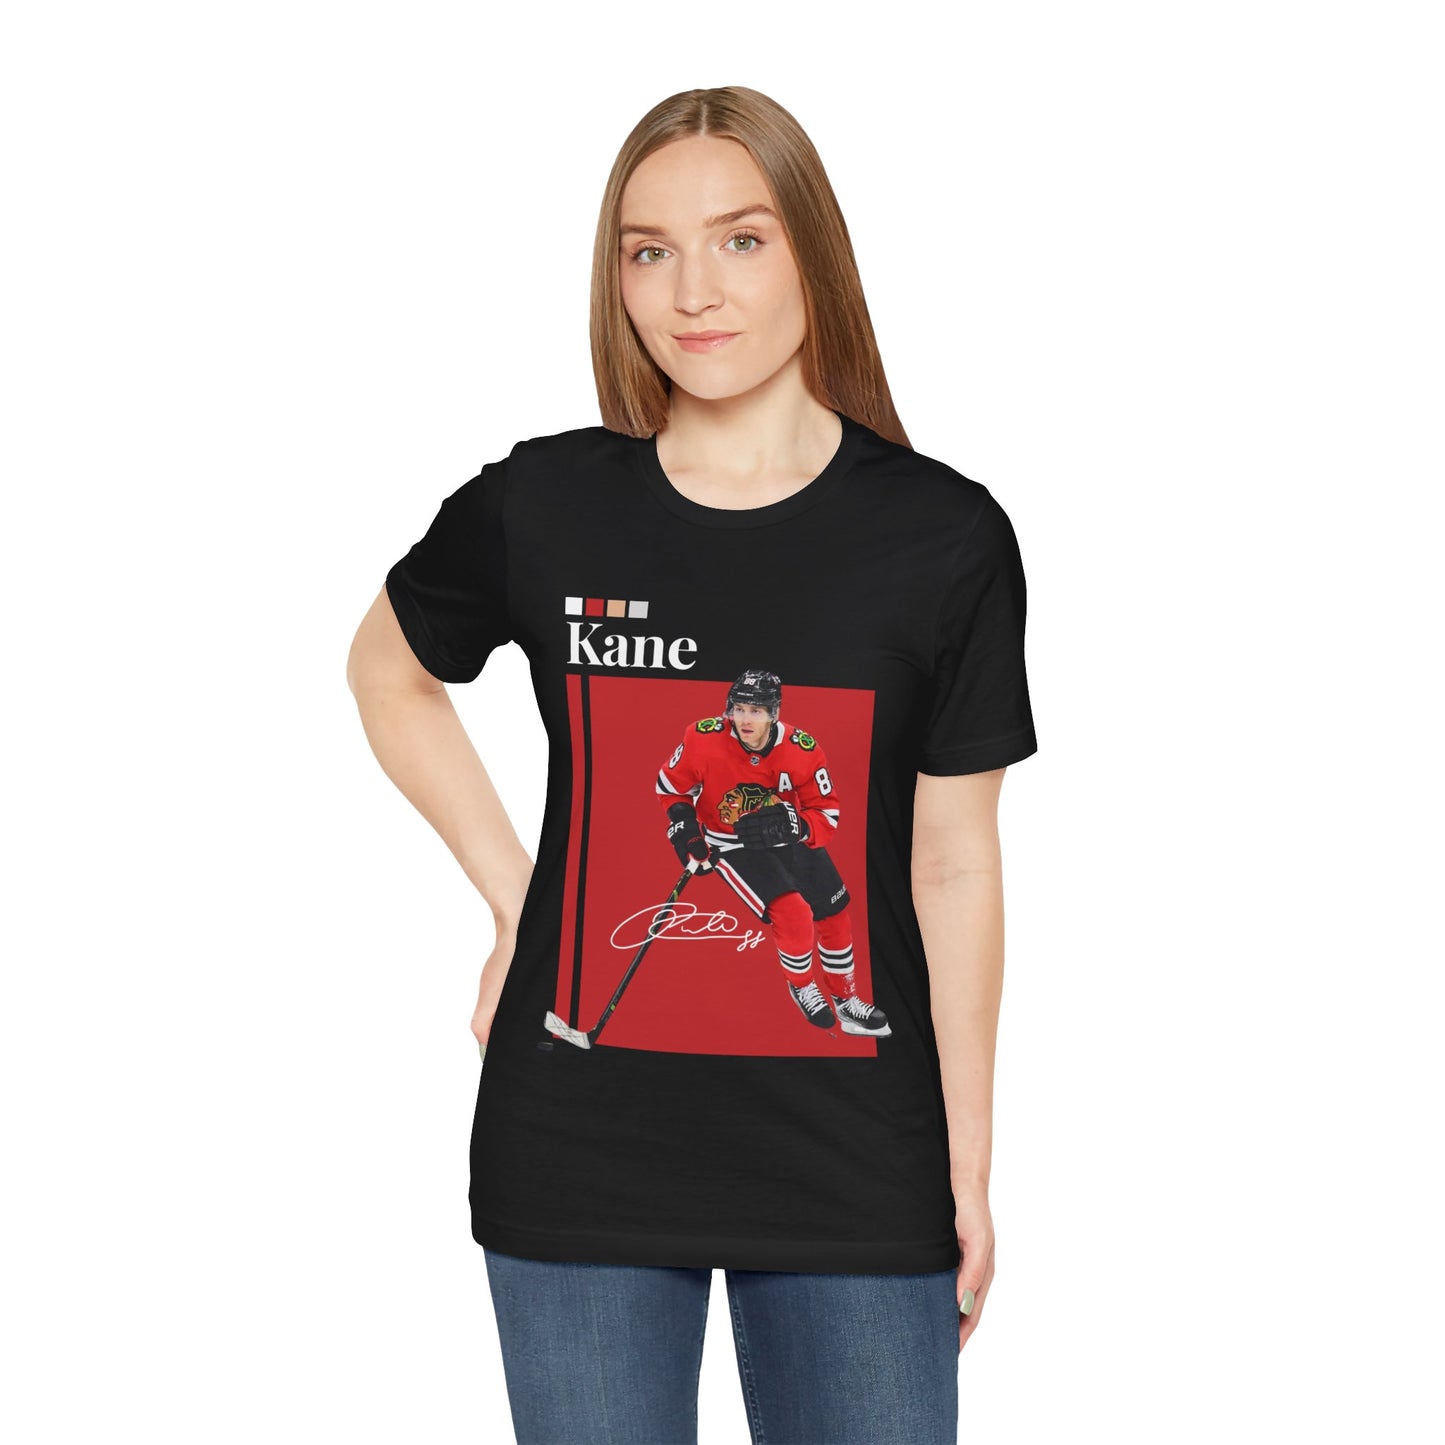 NHL All-Star Patrick Kane Graphic T-Shirt womens fashion black graphic tee